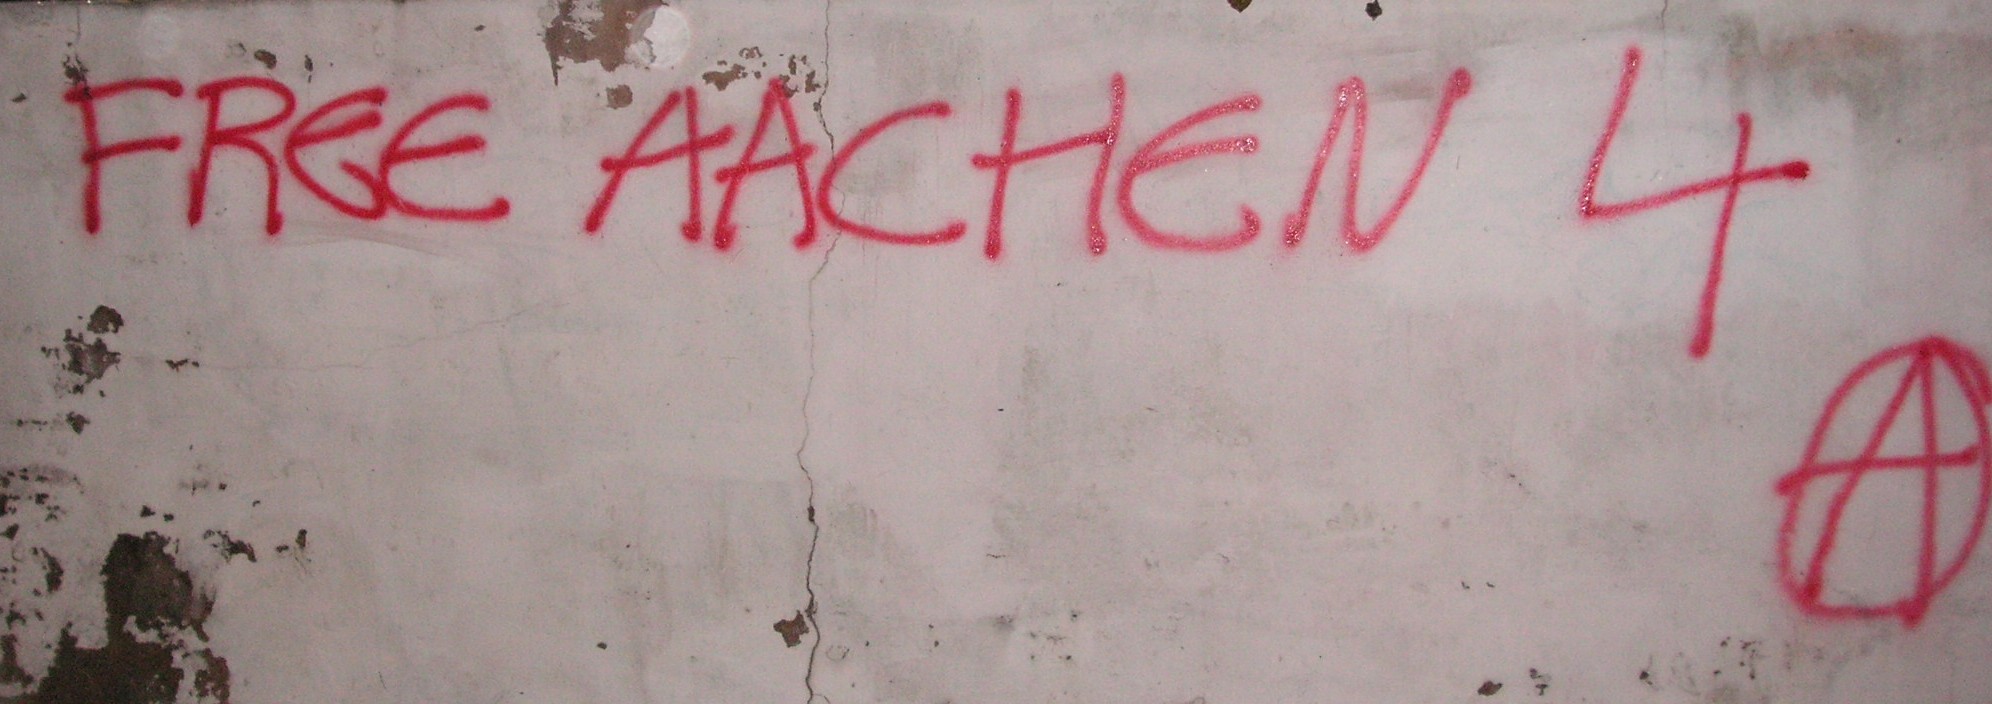 Graffitti on Aachen Way in Halifax (twin town of Aachen)